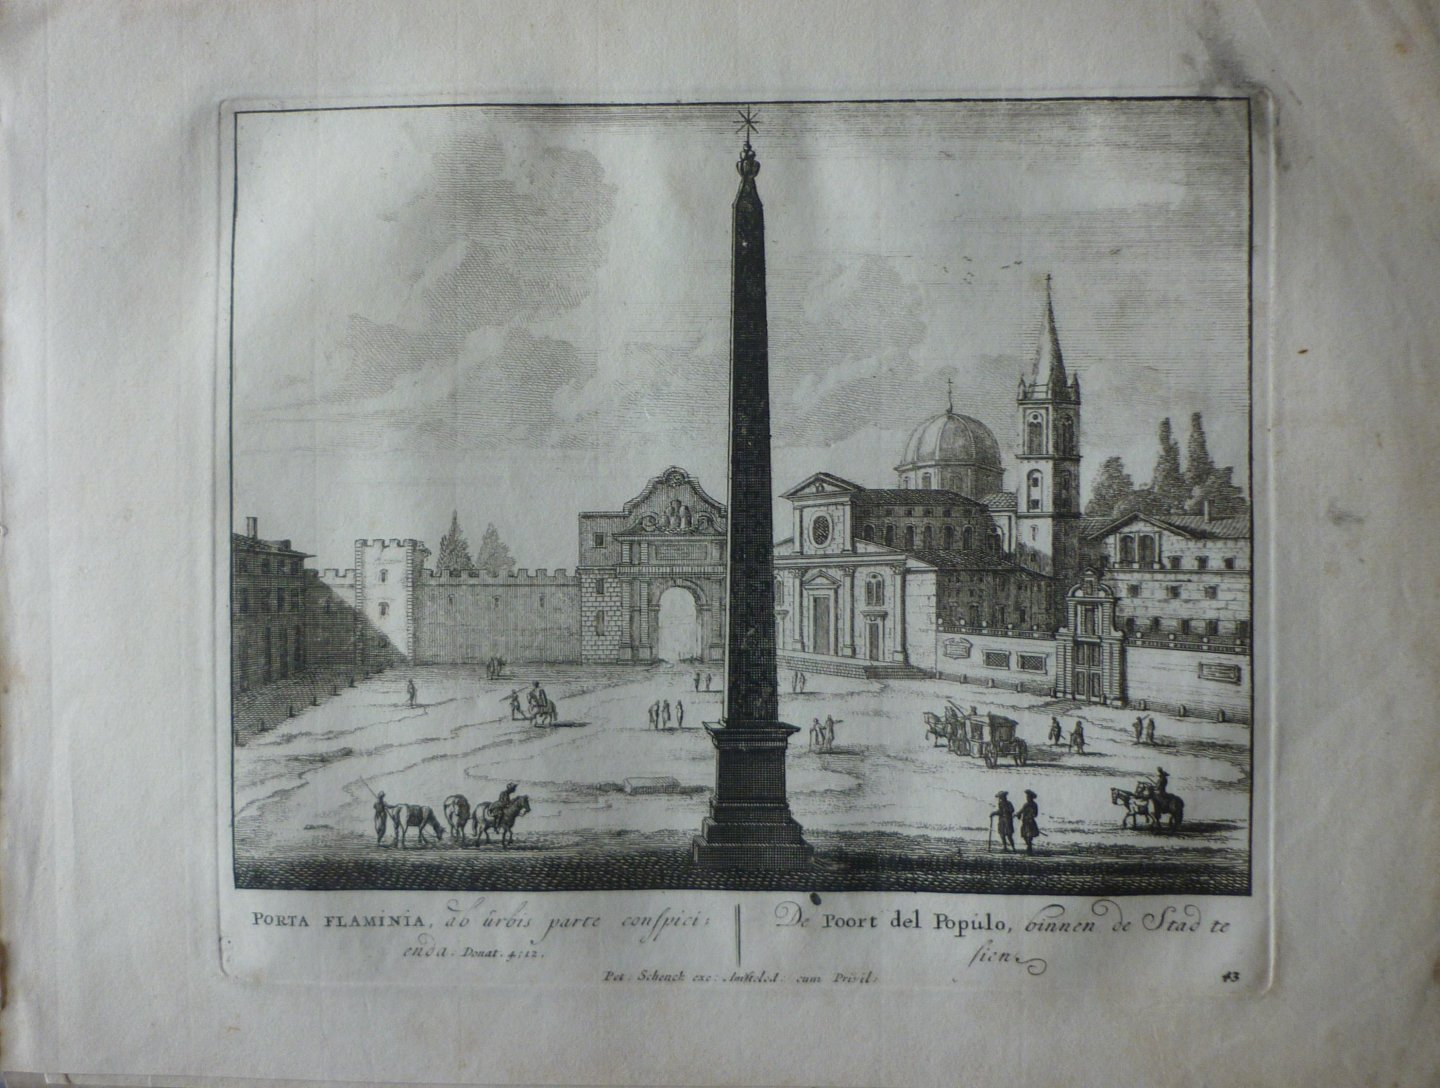 Schenck, Petrus [Pieter Schenk] - De Poort del Populo binnen de Stad te sien 43. Originele kopergravure.